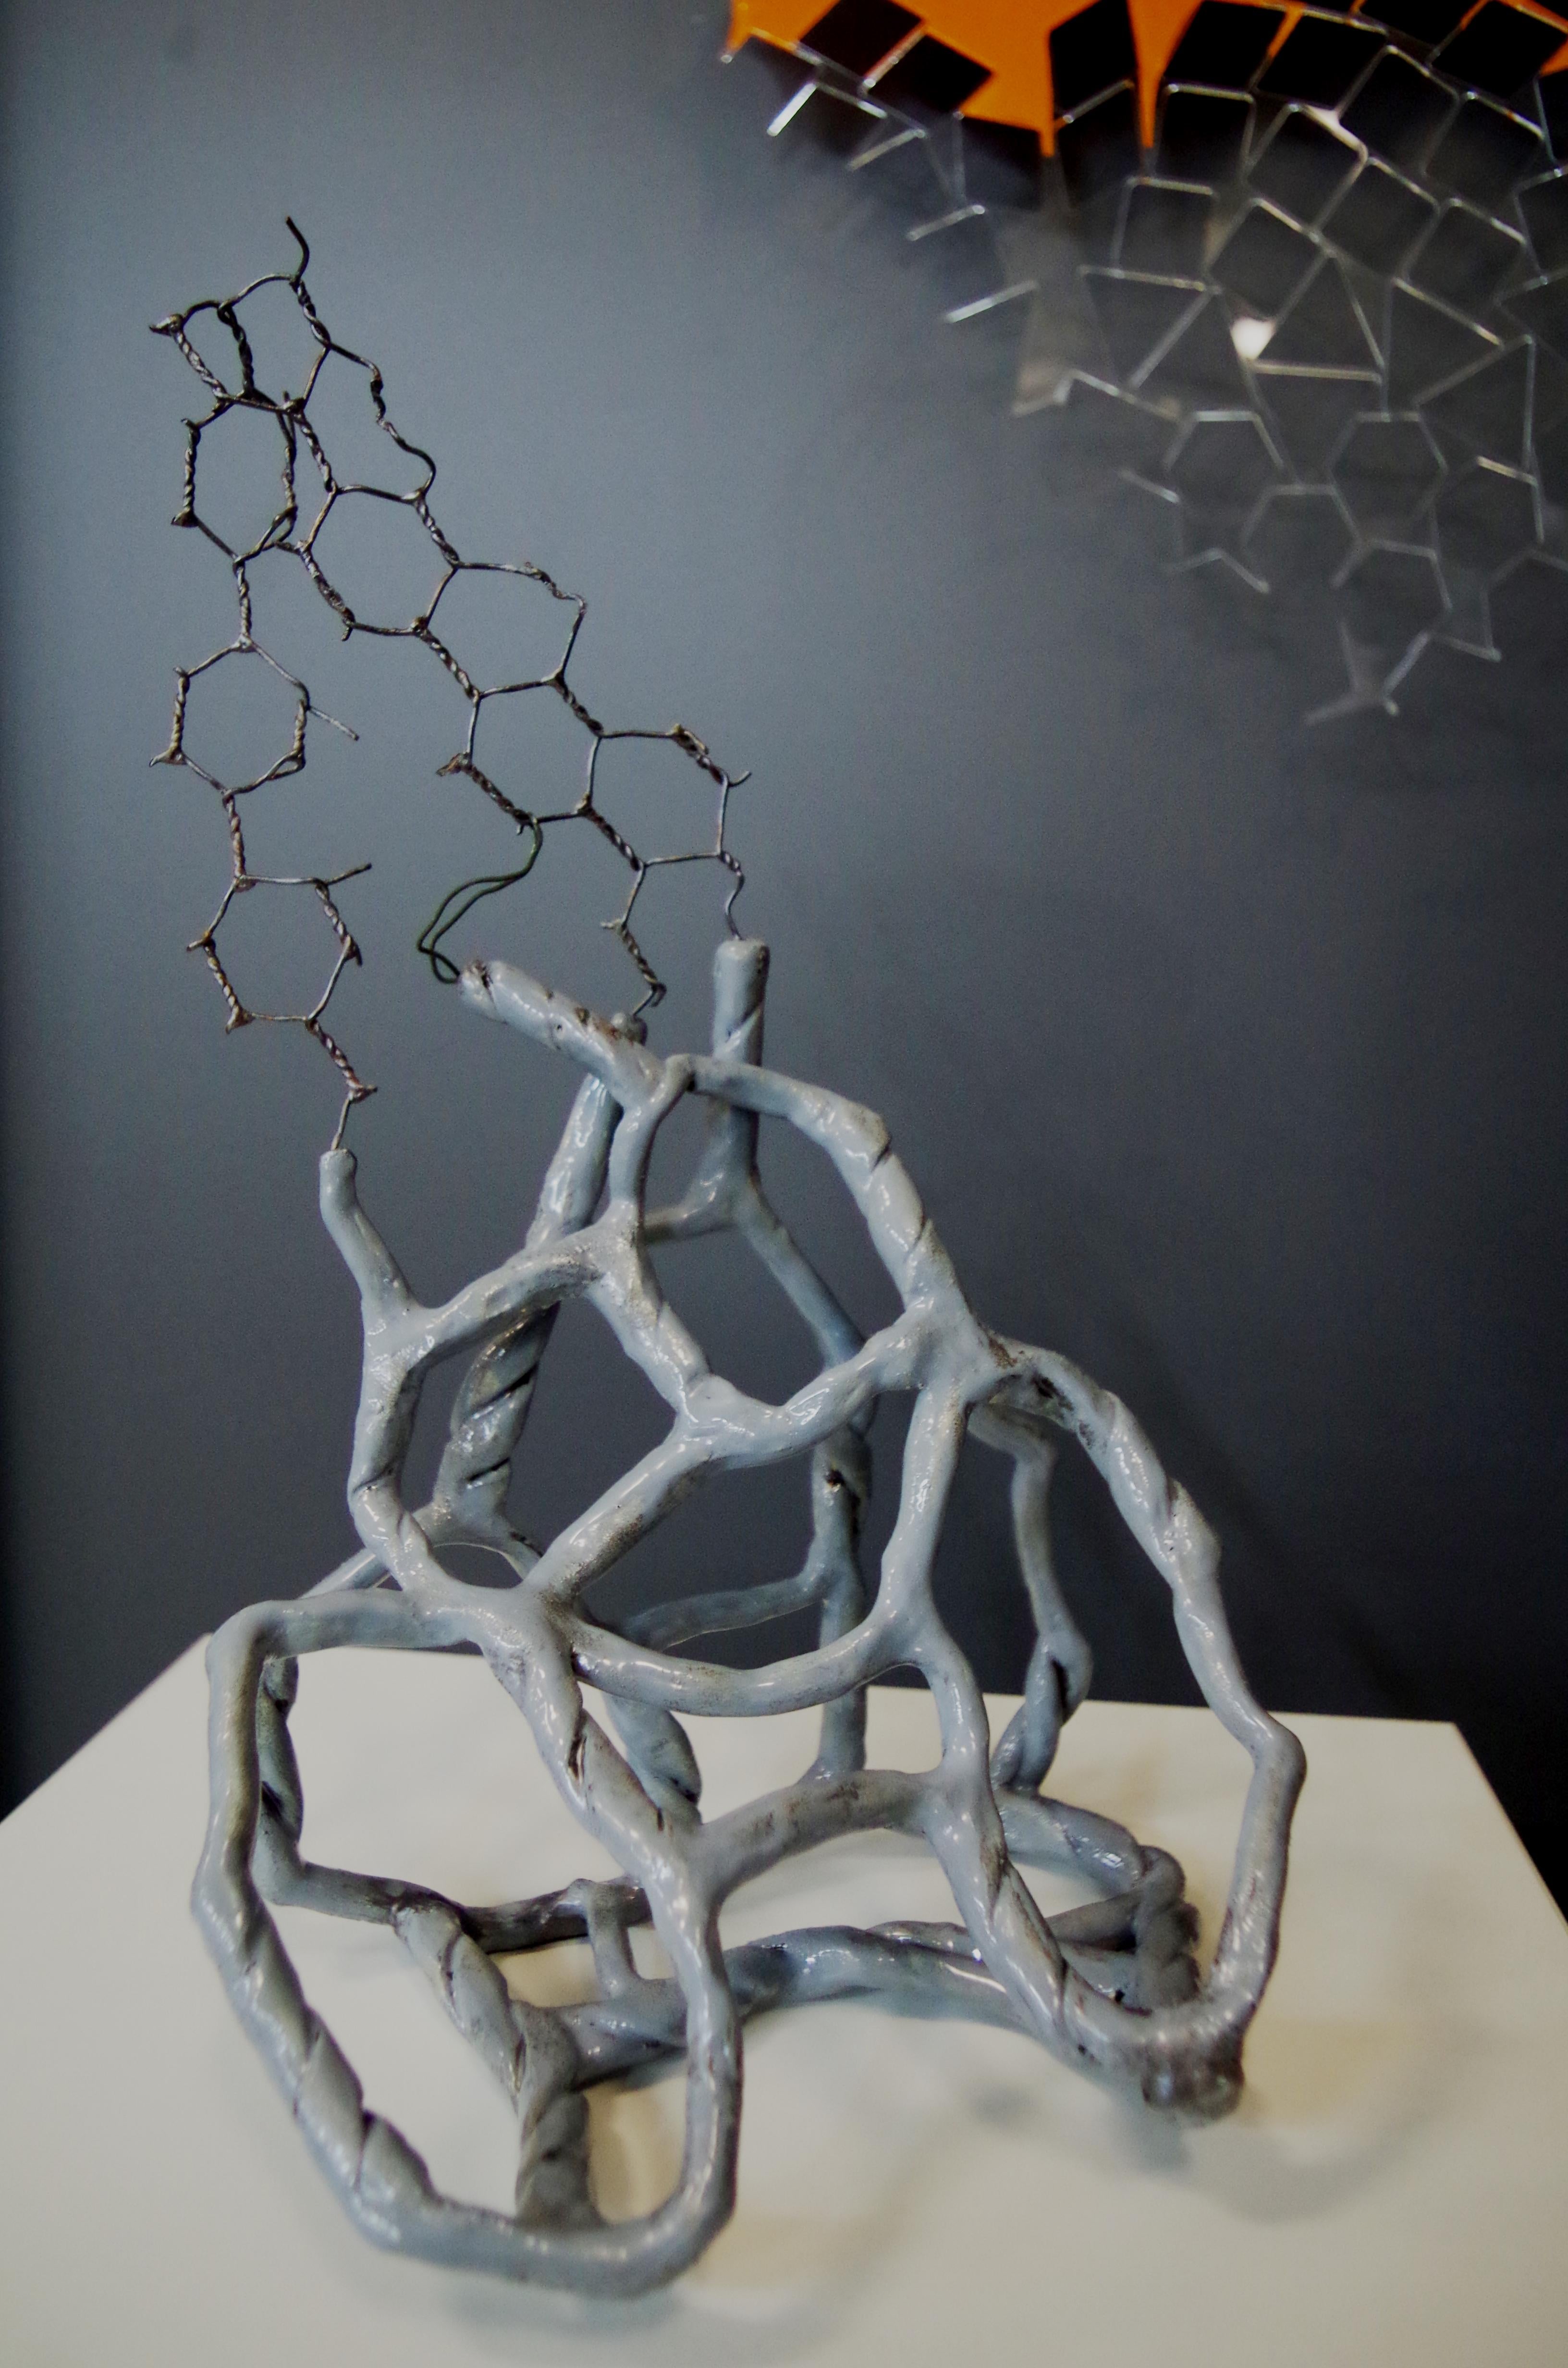 Wirework - Sculpture by Olesia Dvorak-Galik